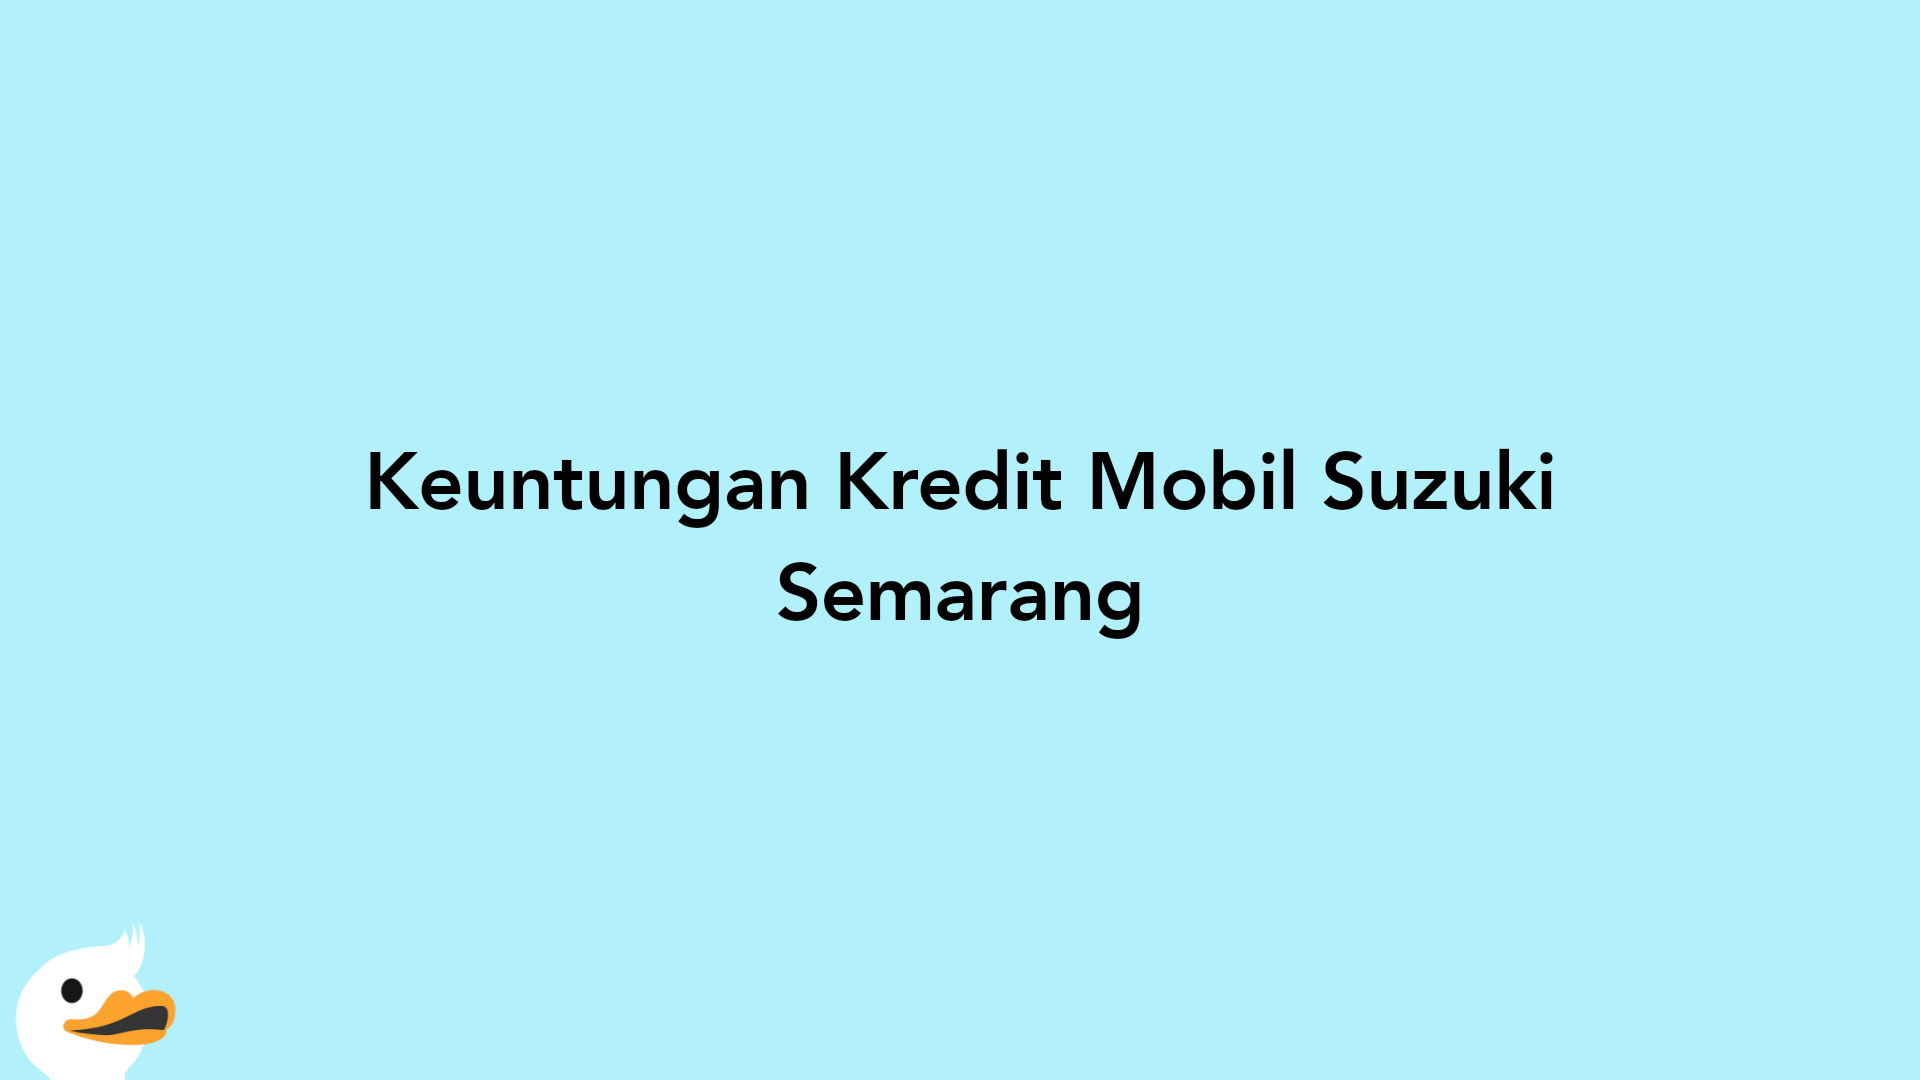 Keuntungan Kredit Mobil Suzuki Semarang